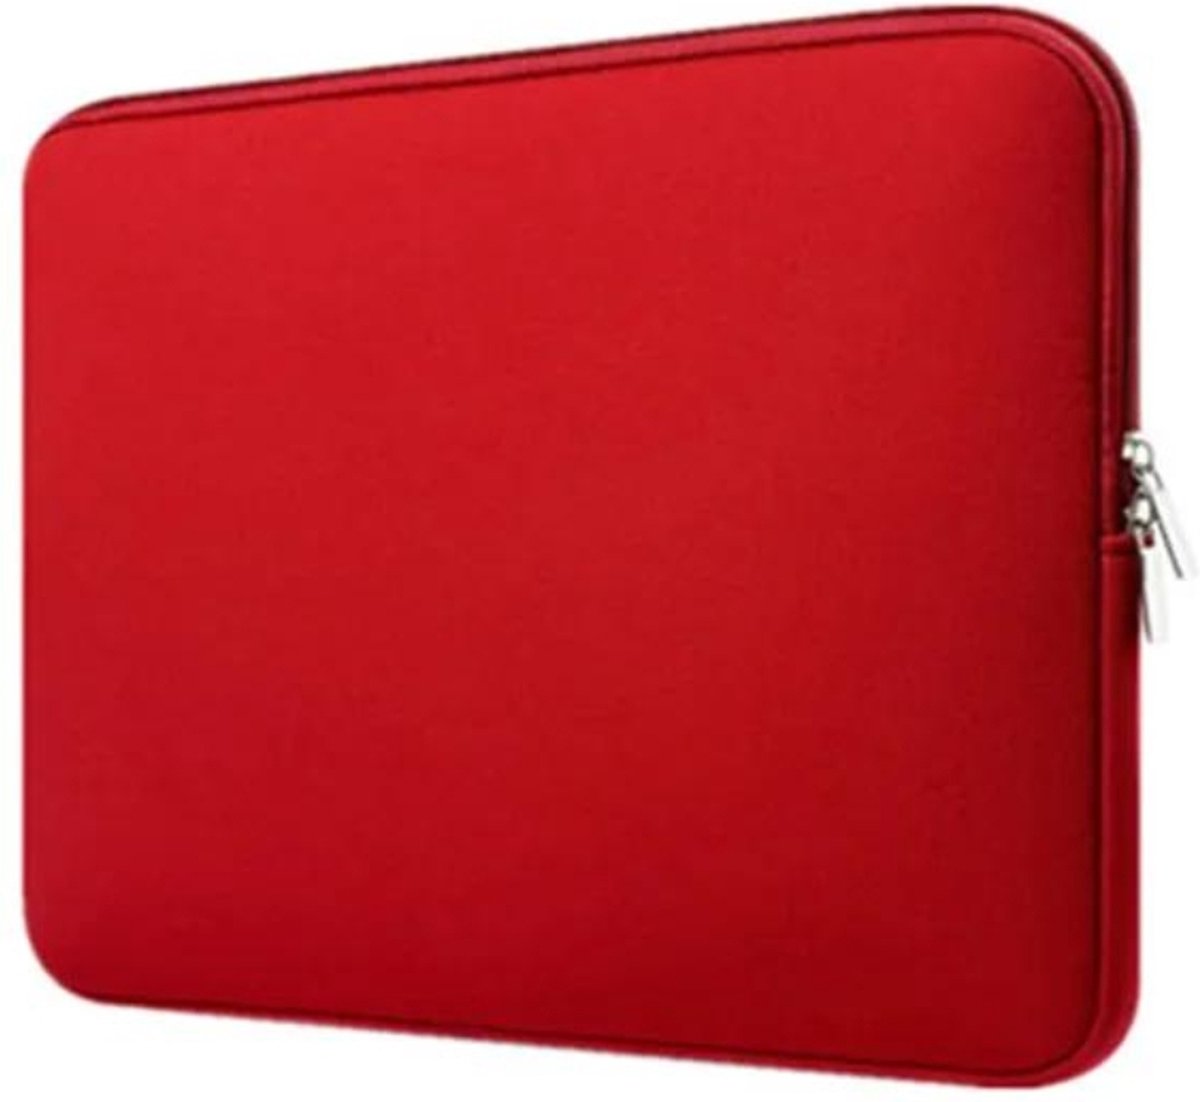 Laptop sleeve 16 inch spatwaterdicht foam dubbel ritssluiting rood